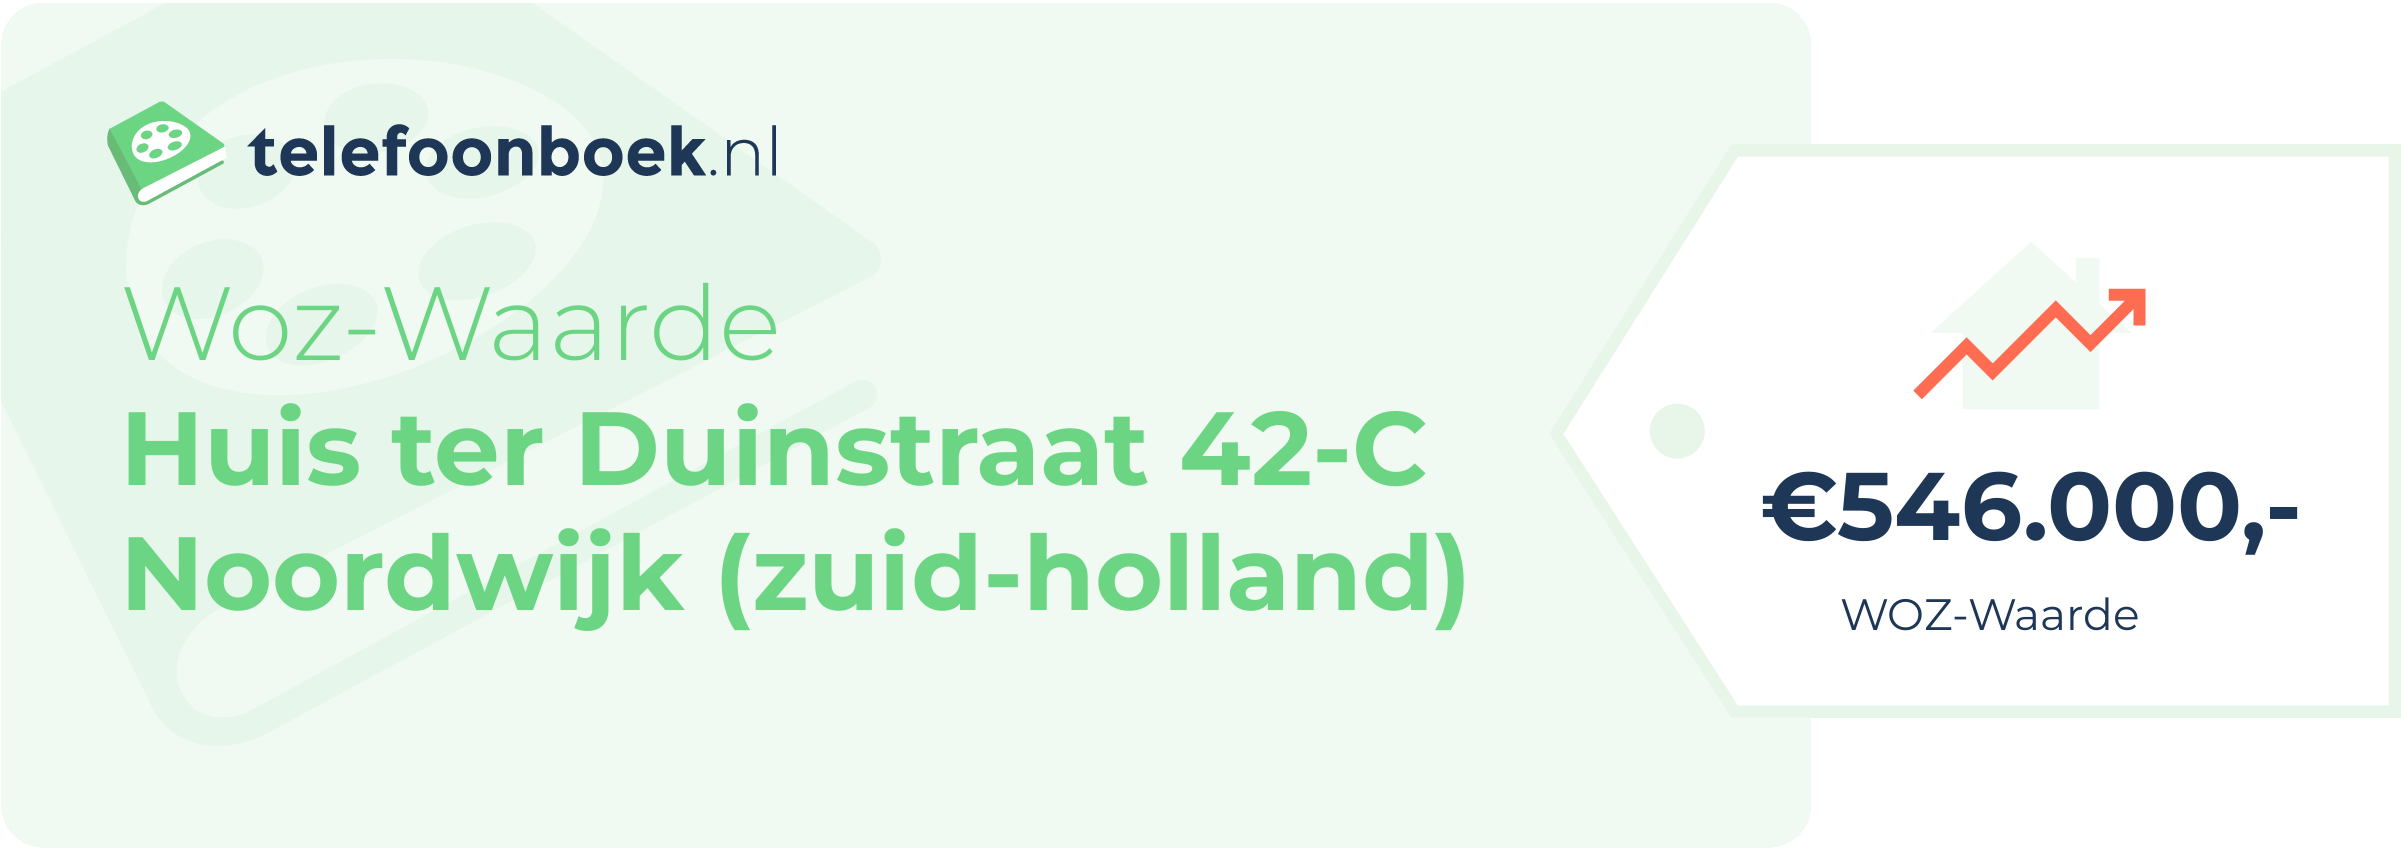 WOZ-waarde Huis Ter Duinstraat 42-C Noordwijk (Zuid-Holland)